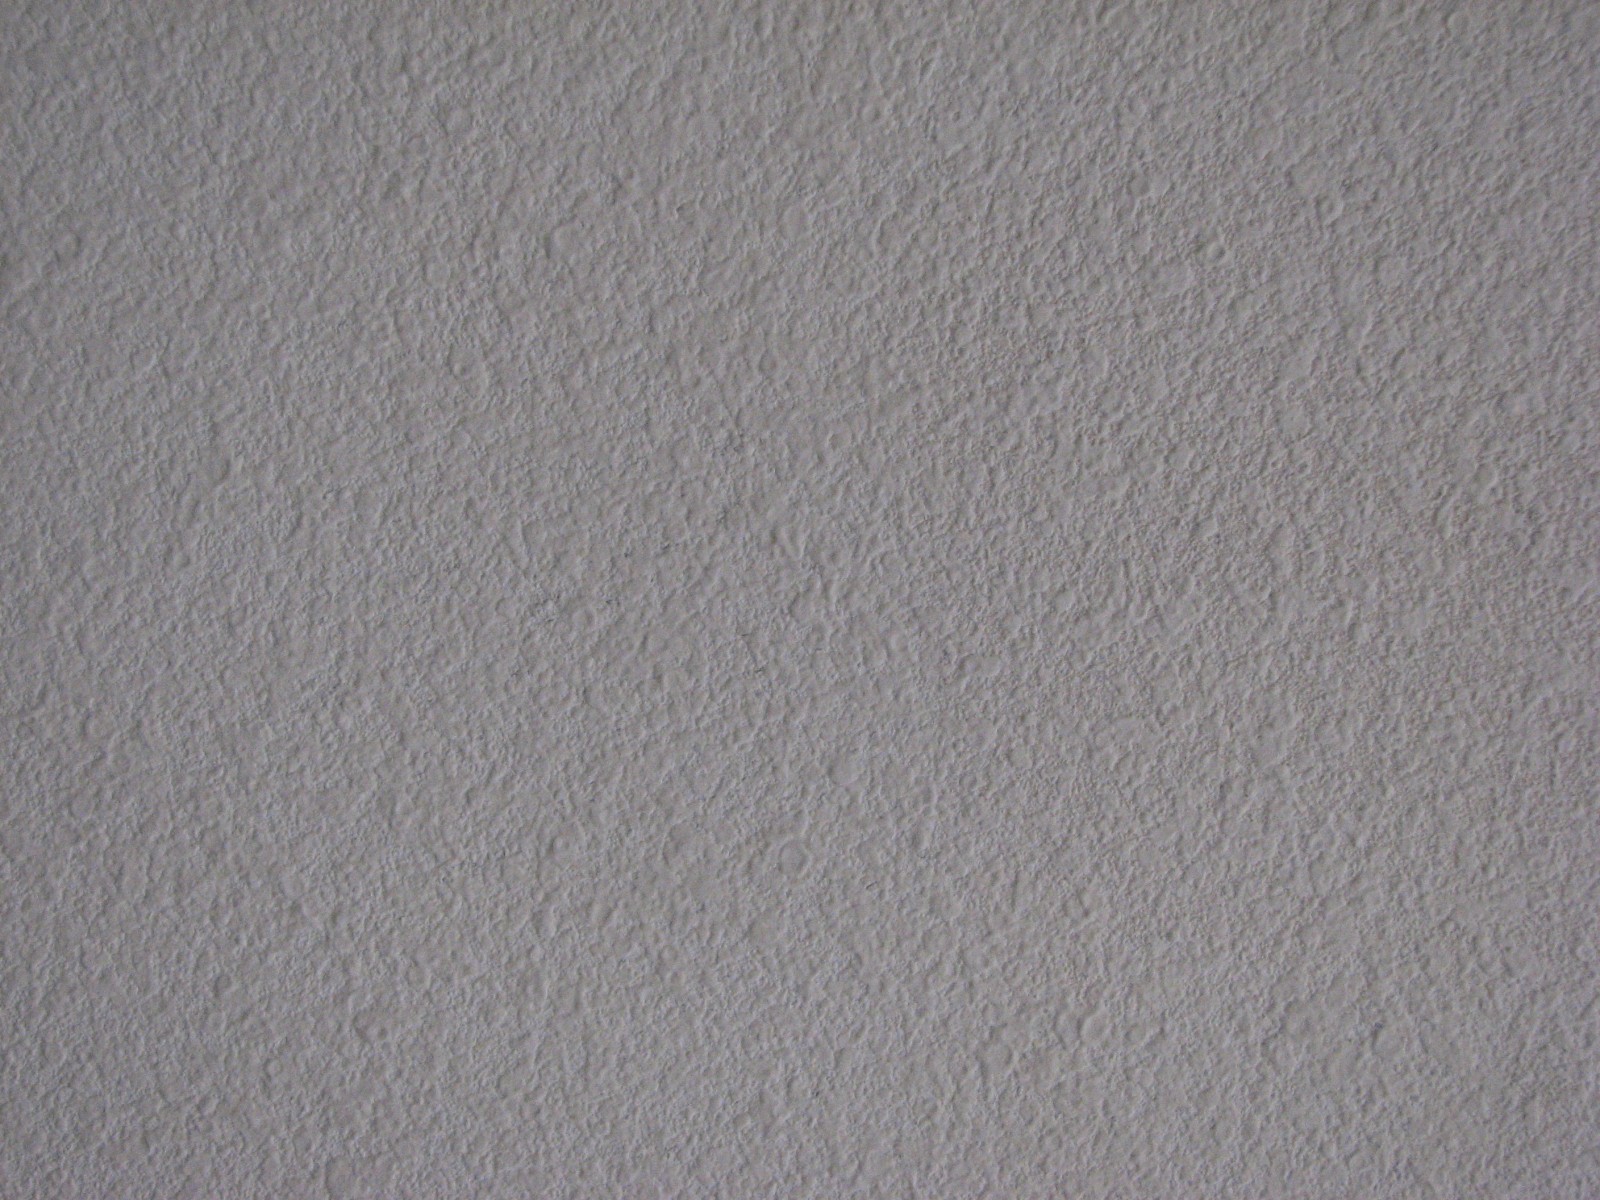 Drywall Repair Texture Primer